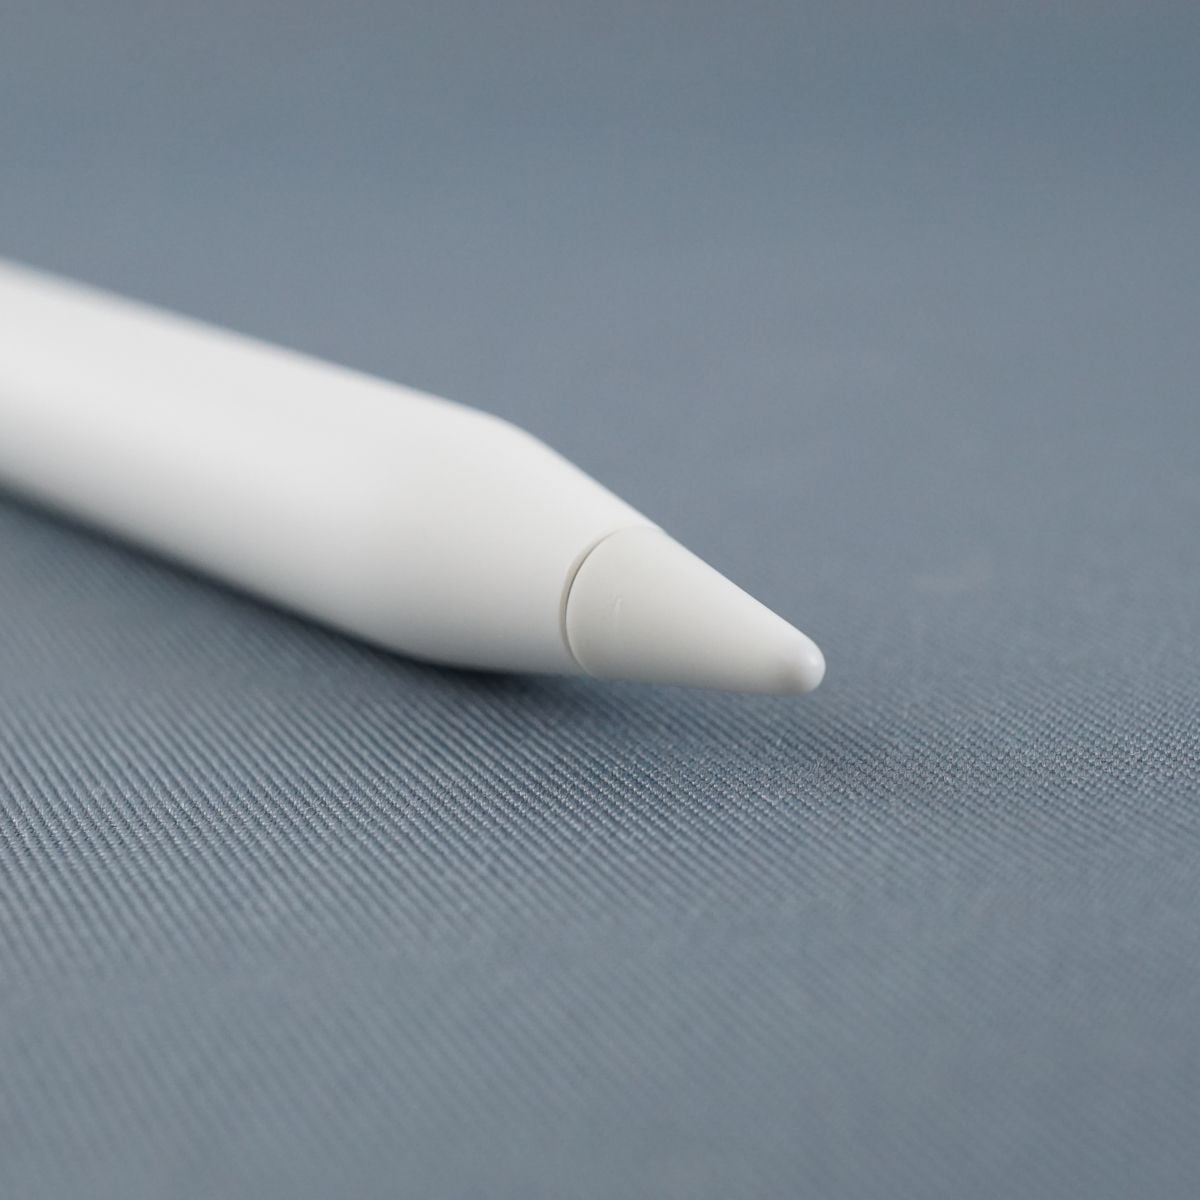 【保証あり】 Apple Pencil 第2世代 MU8F2J/A